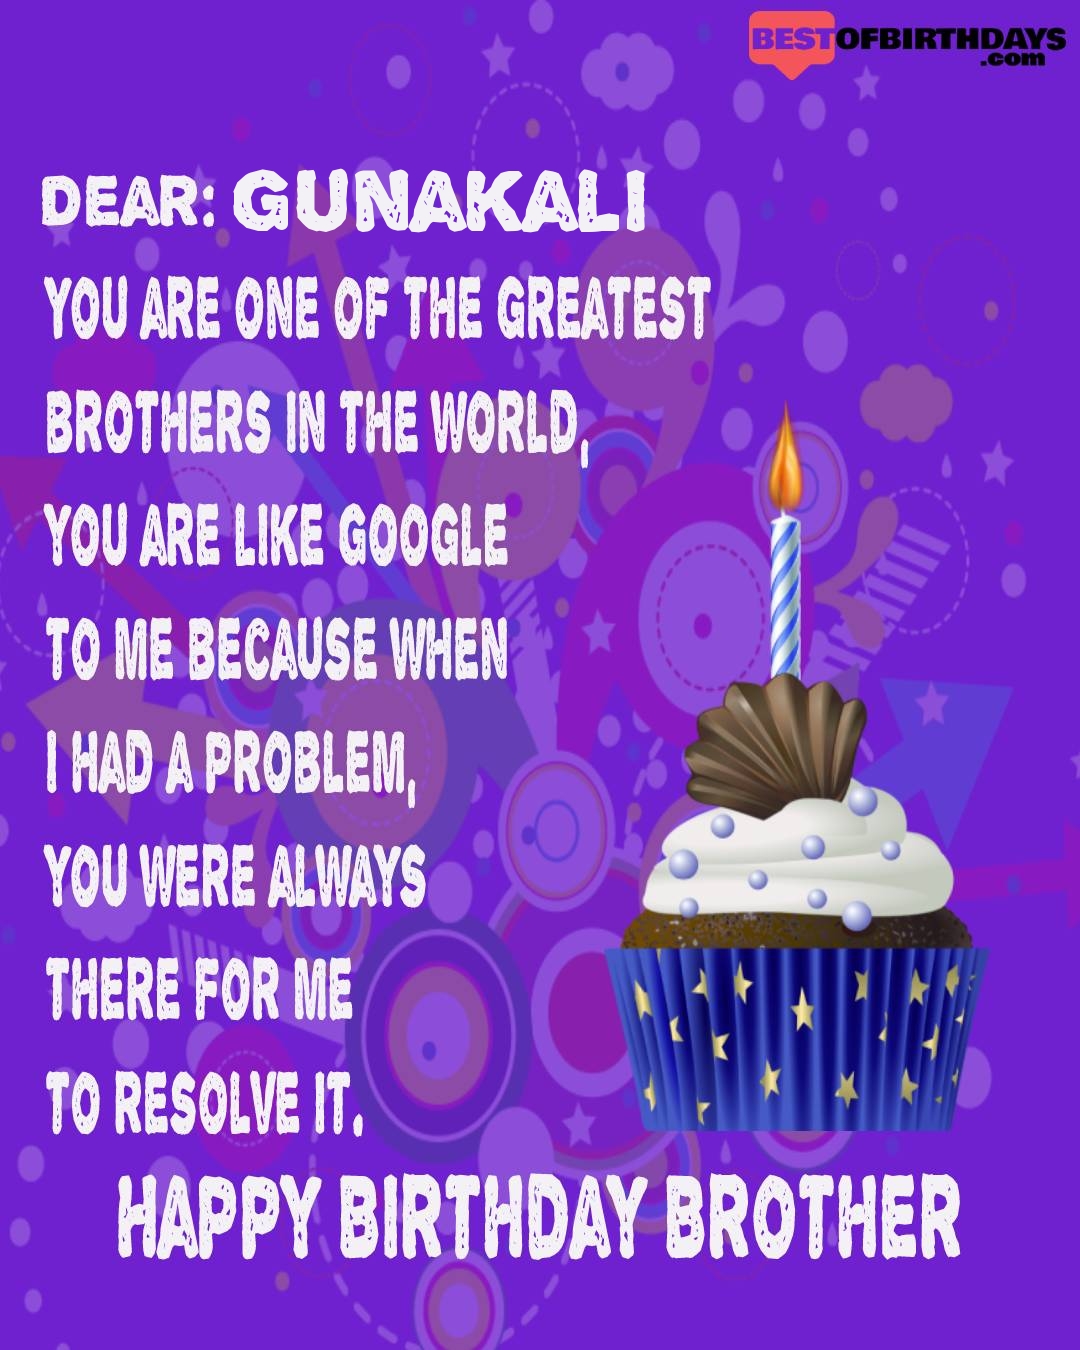 Happy birthday gunakali bhai brother bro